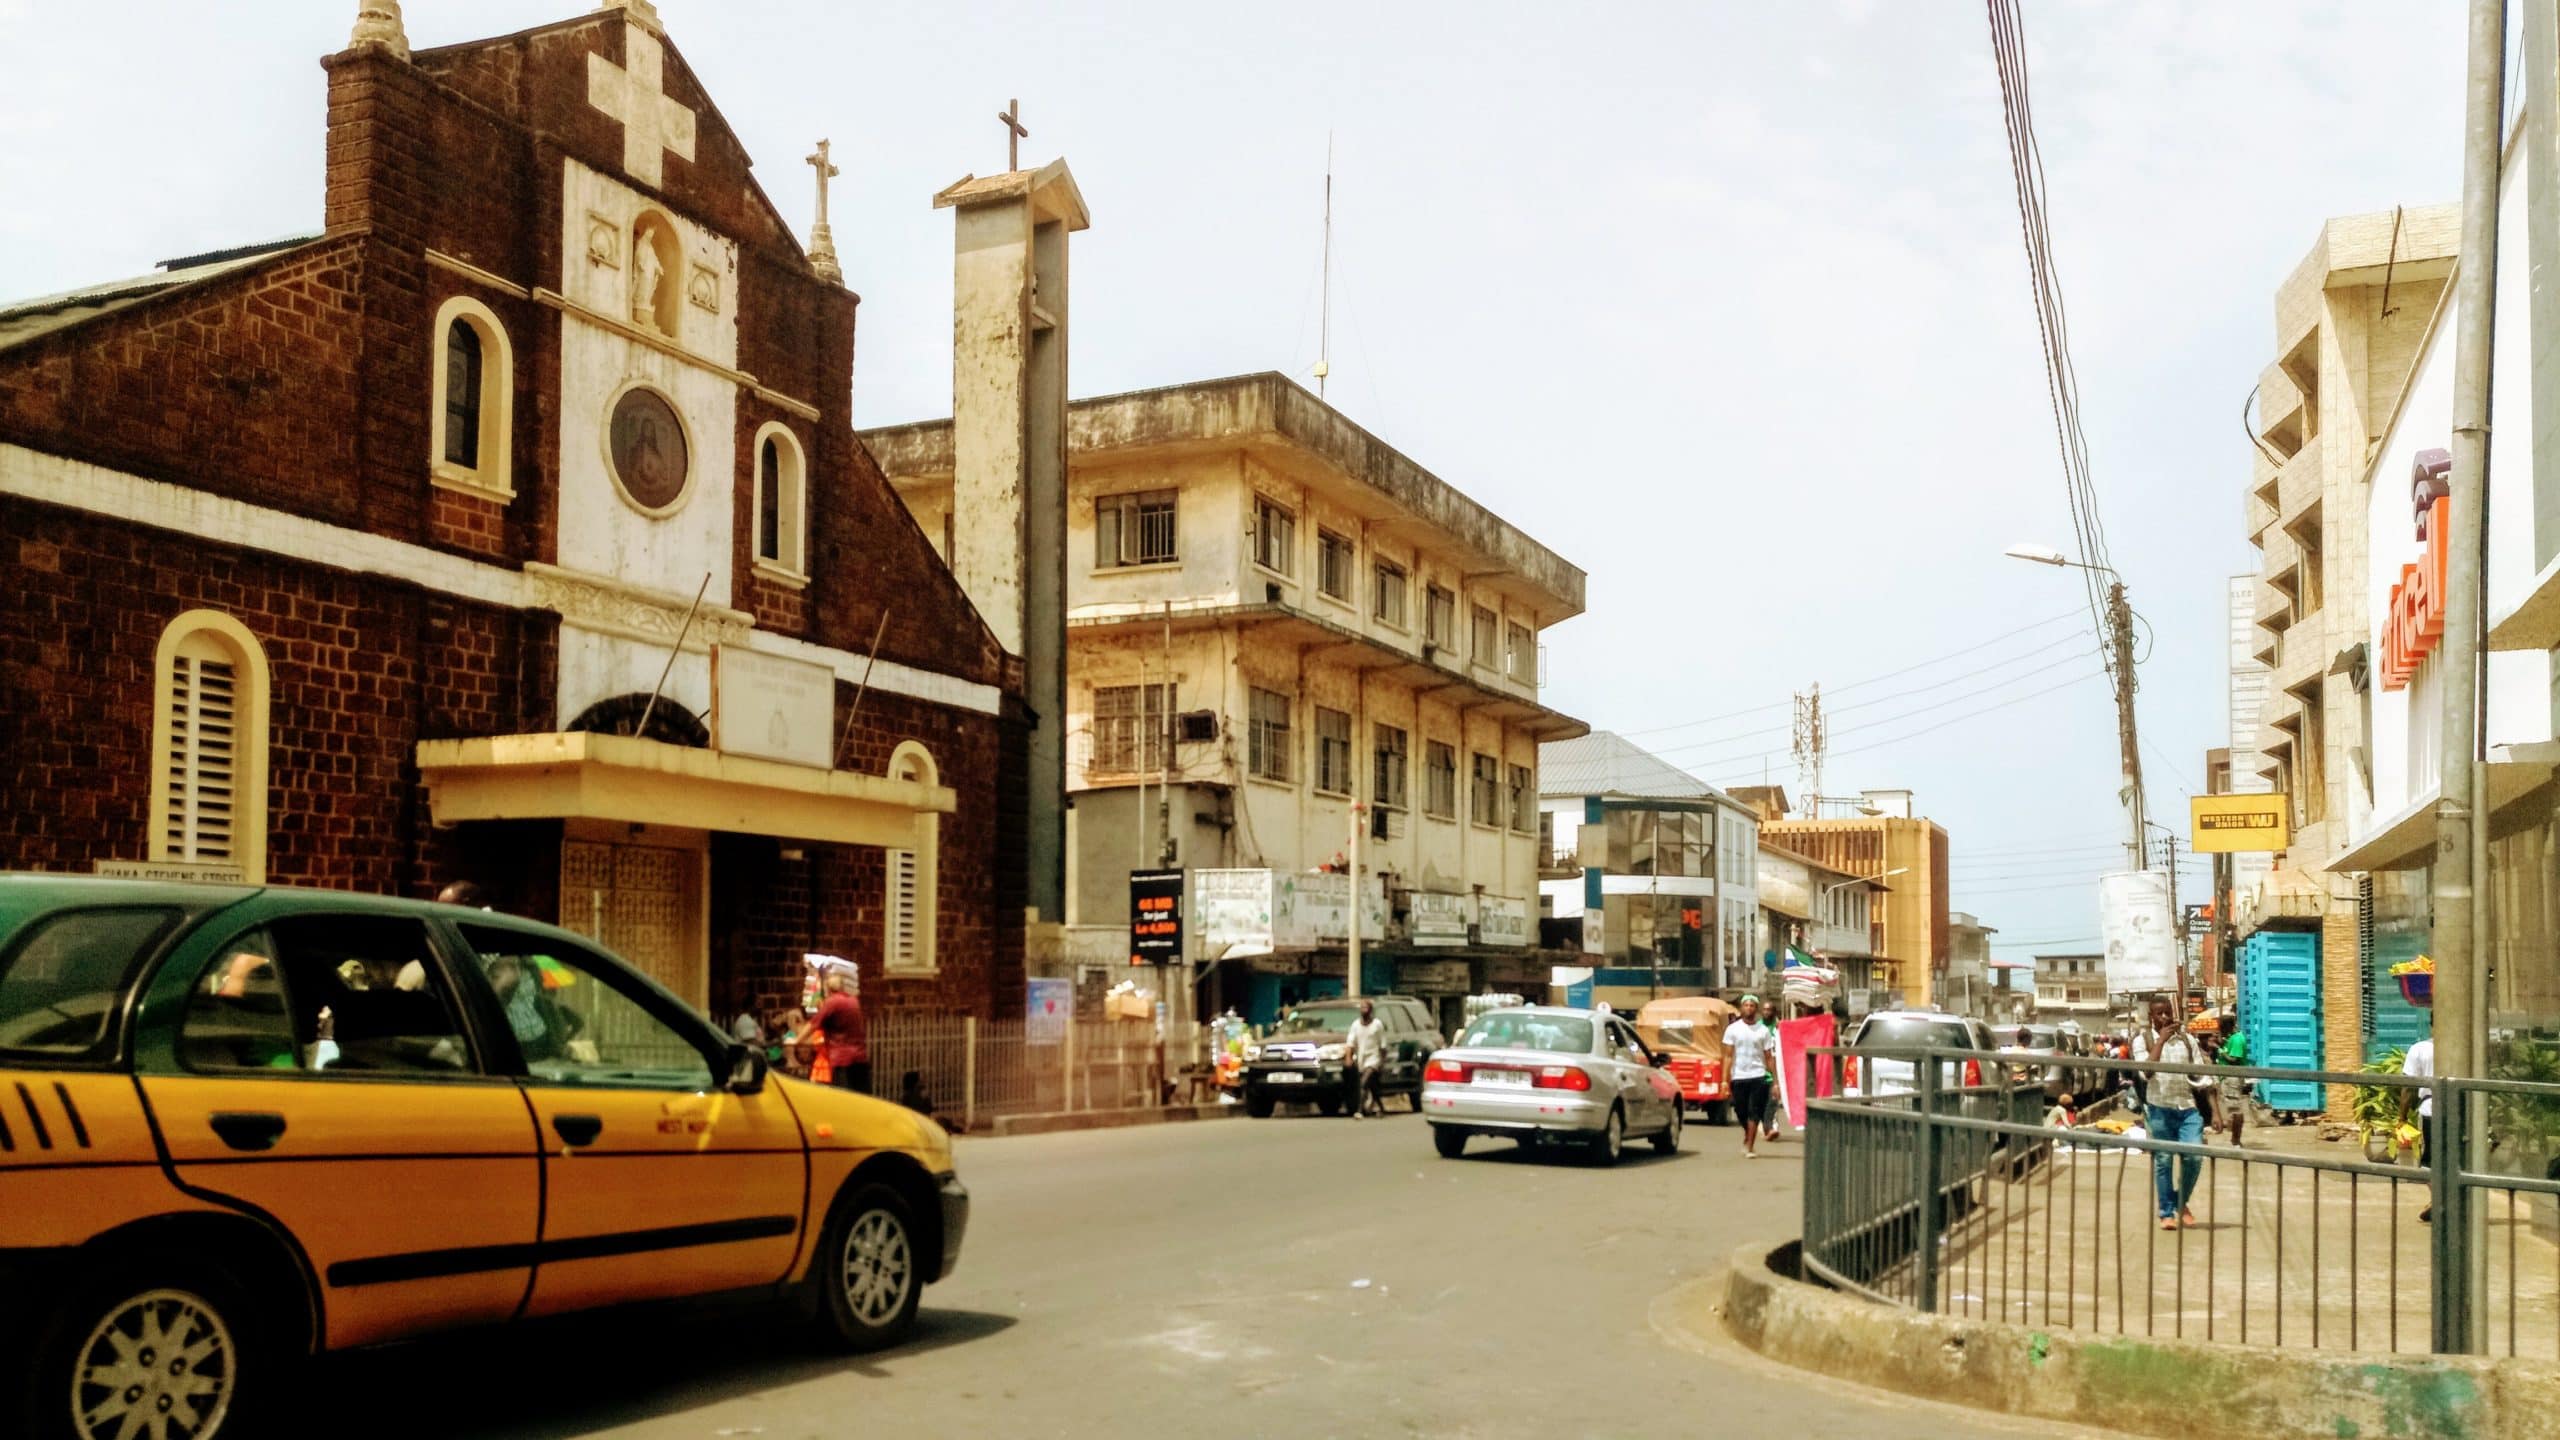 Street in Freetown, Sierra Leone